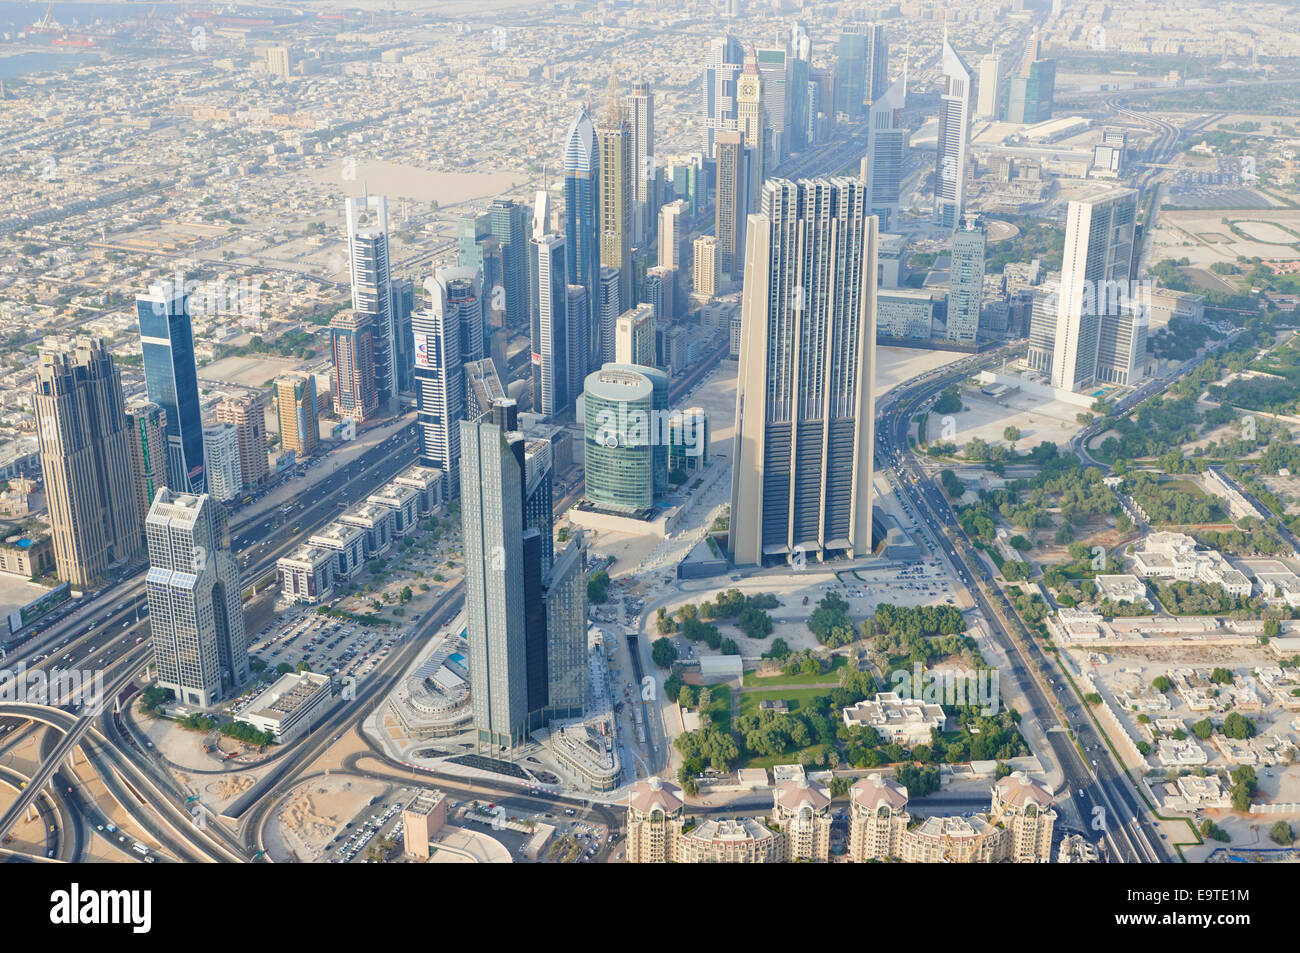 Vue sur Dubai à partir de la plate-forme d'observation la plus haute du monde à 555 mètres de haut niveau sur les 148 de la Burj Khalifa Dubaï ÉMIRATS ARABES UNIS Banque D'Images